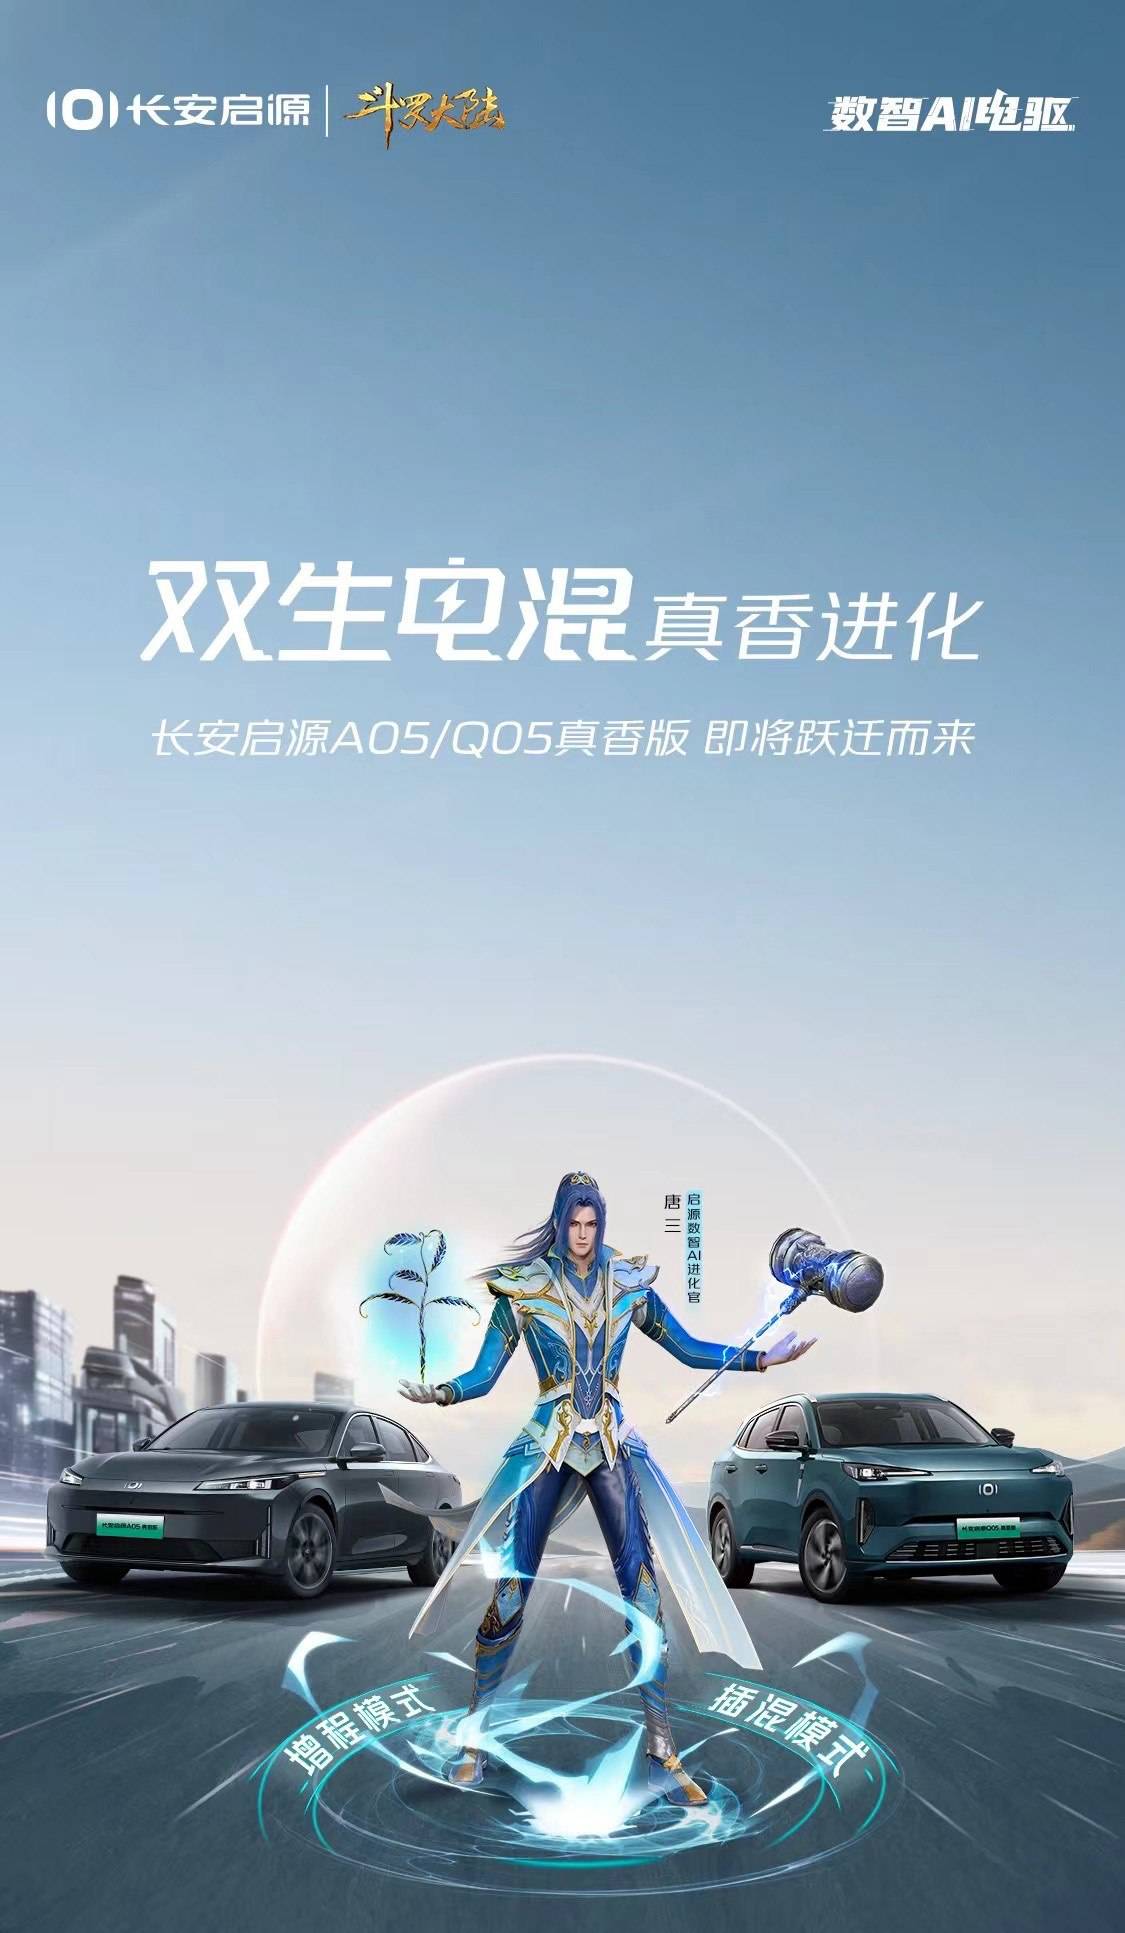 为进一步提升车型竞争力，长安启源A05/Q05将推出正版香氛版_搜狐汽车_ Sohu.com。